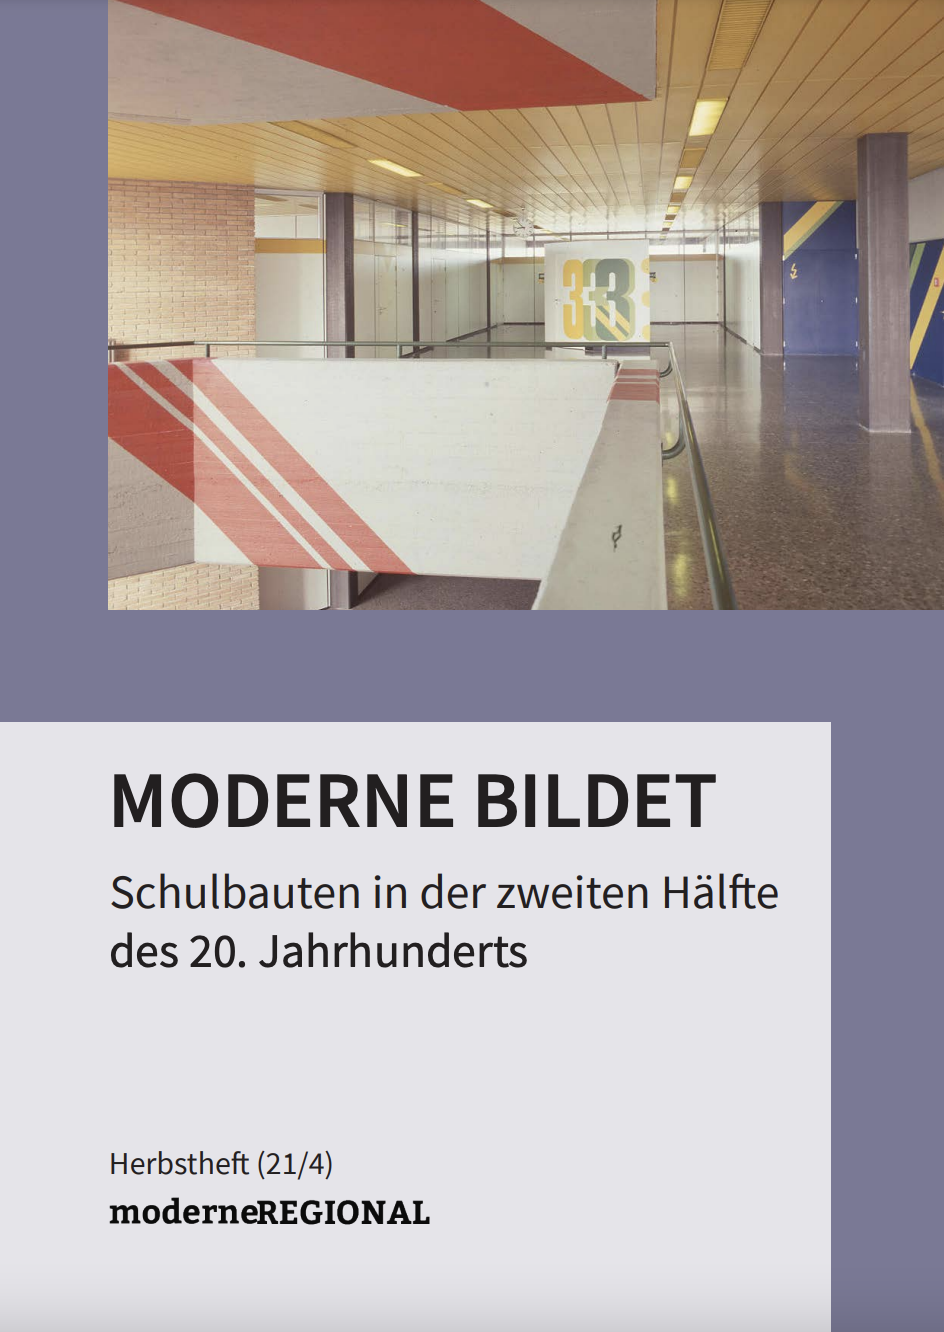 Moderne bildet – Schulbauten in der zweiten Hälfte des 20. Jahrhunderts